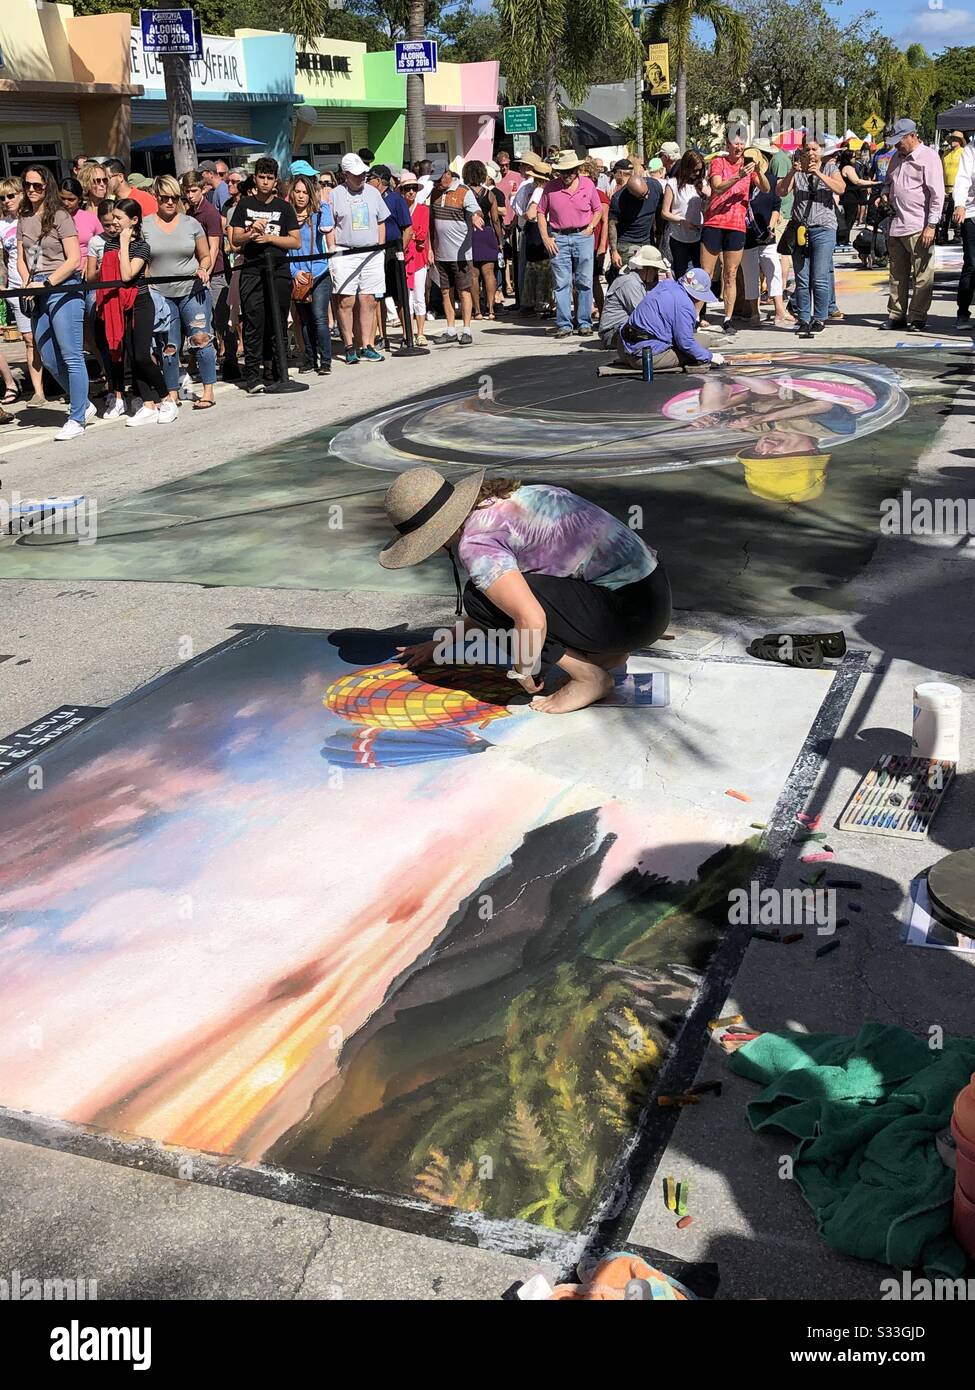 Las multitudes ven a los artistas de la calle crear murales de tiza en la acera en el Lake Worth Beach Street Painting Festival, Florida, febrero de 2020. Foto de stock